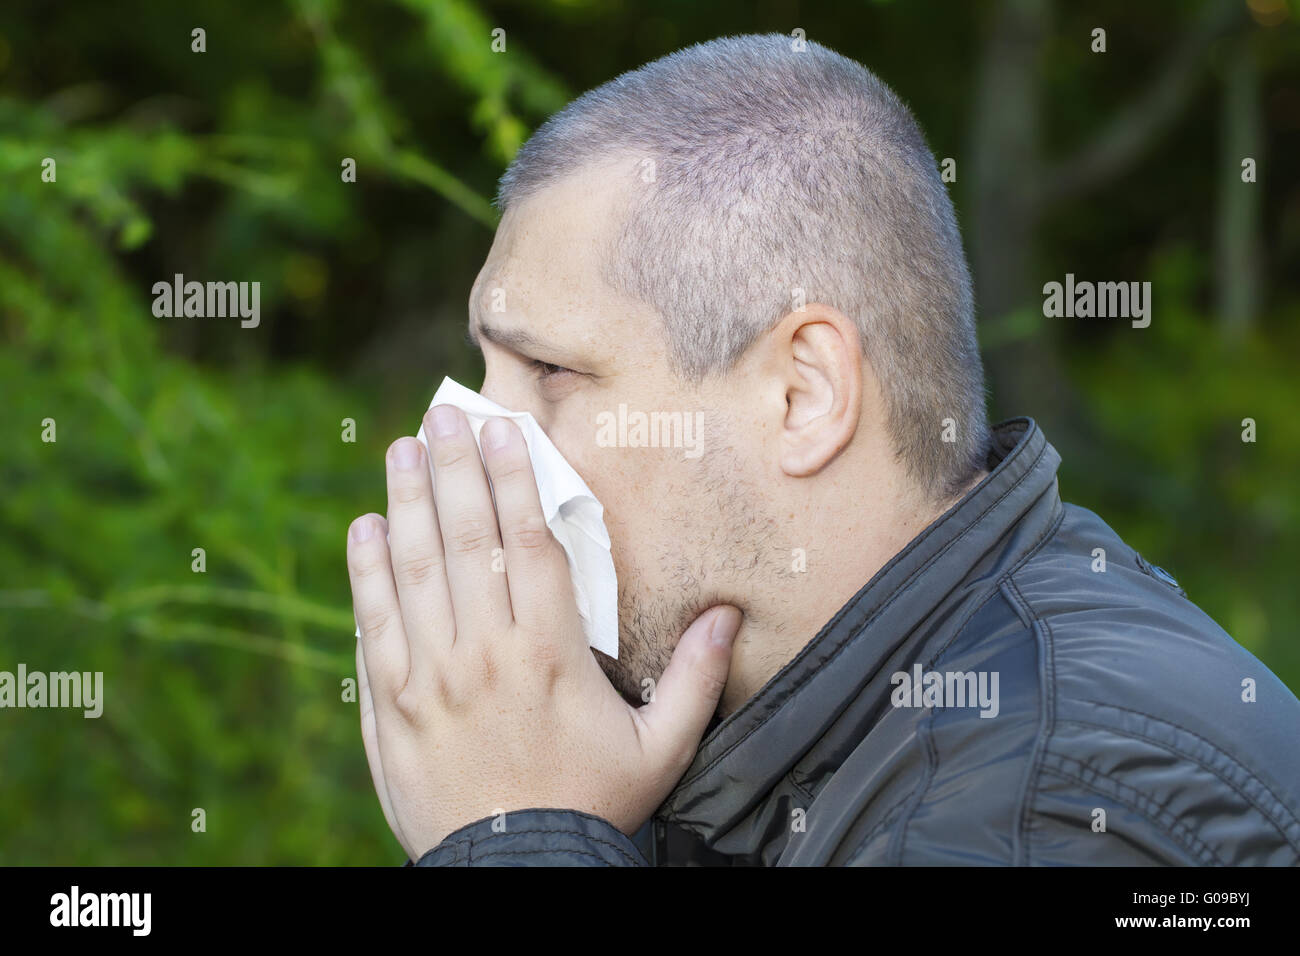 Homme avec un écoulement nasal et une serviette Banque D'Images